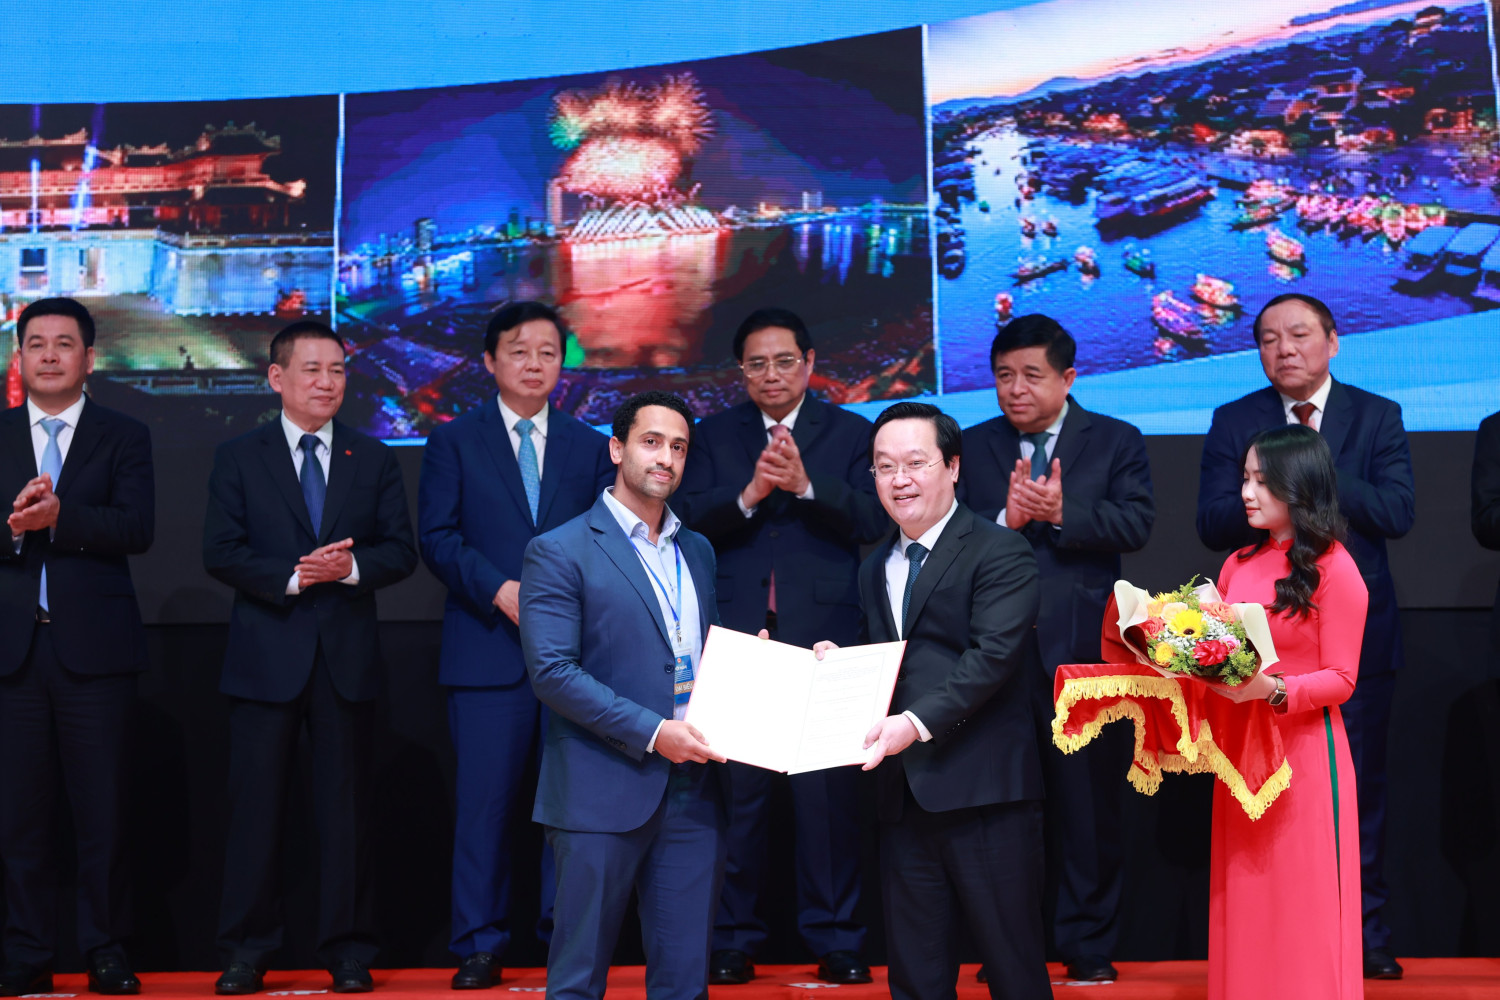 đạo tỉnh Nghệ An trao Giấy chứng nhận đầu tư/ Thoả thuận đầu tư cho doanh nghiệp